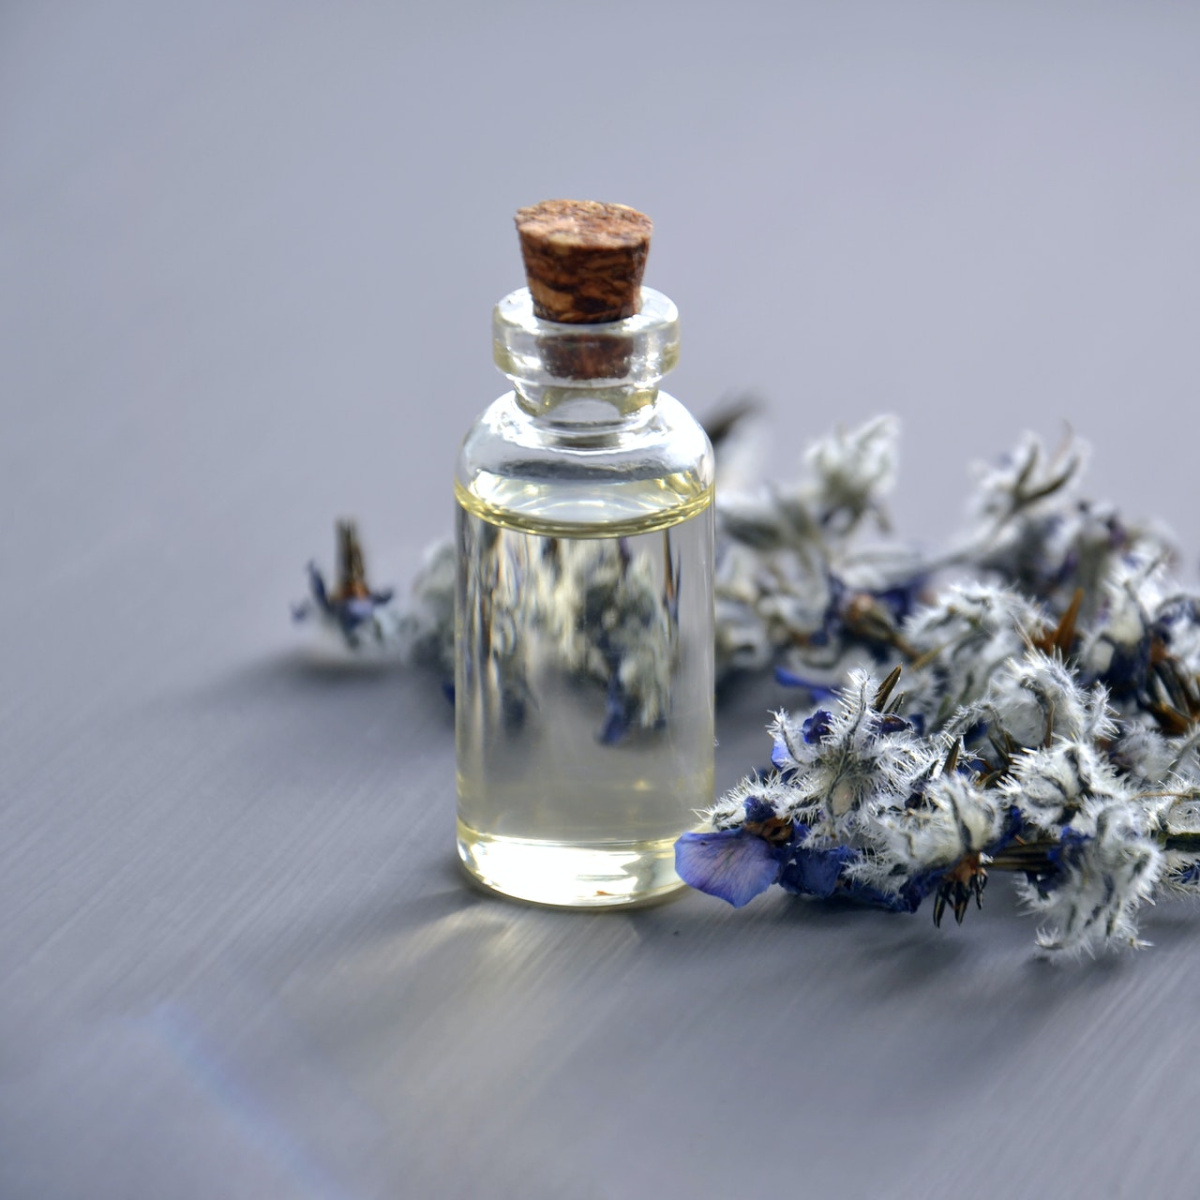 Как правильно пользоваться парфюмерными композициями